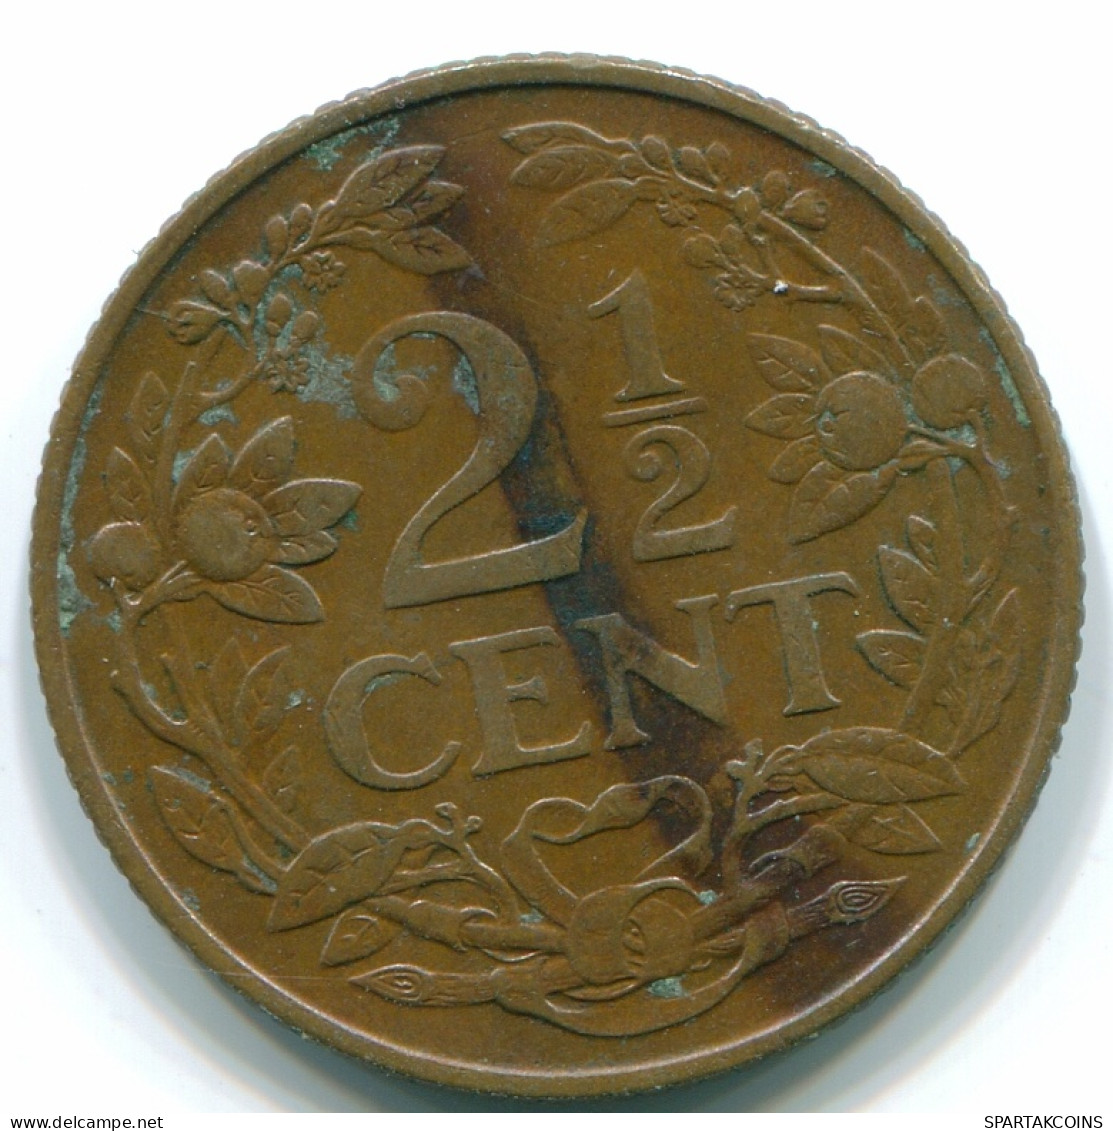 2 1/2 CENT 1956 CURACAO NIEDERLANDE NETHERLANDS Koloniale Münze #S10167.D - Curaçao